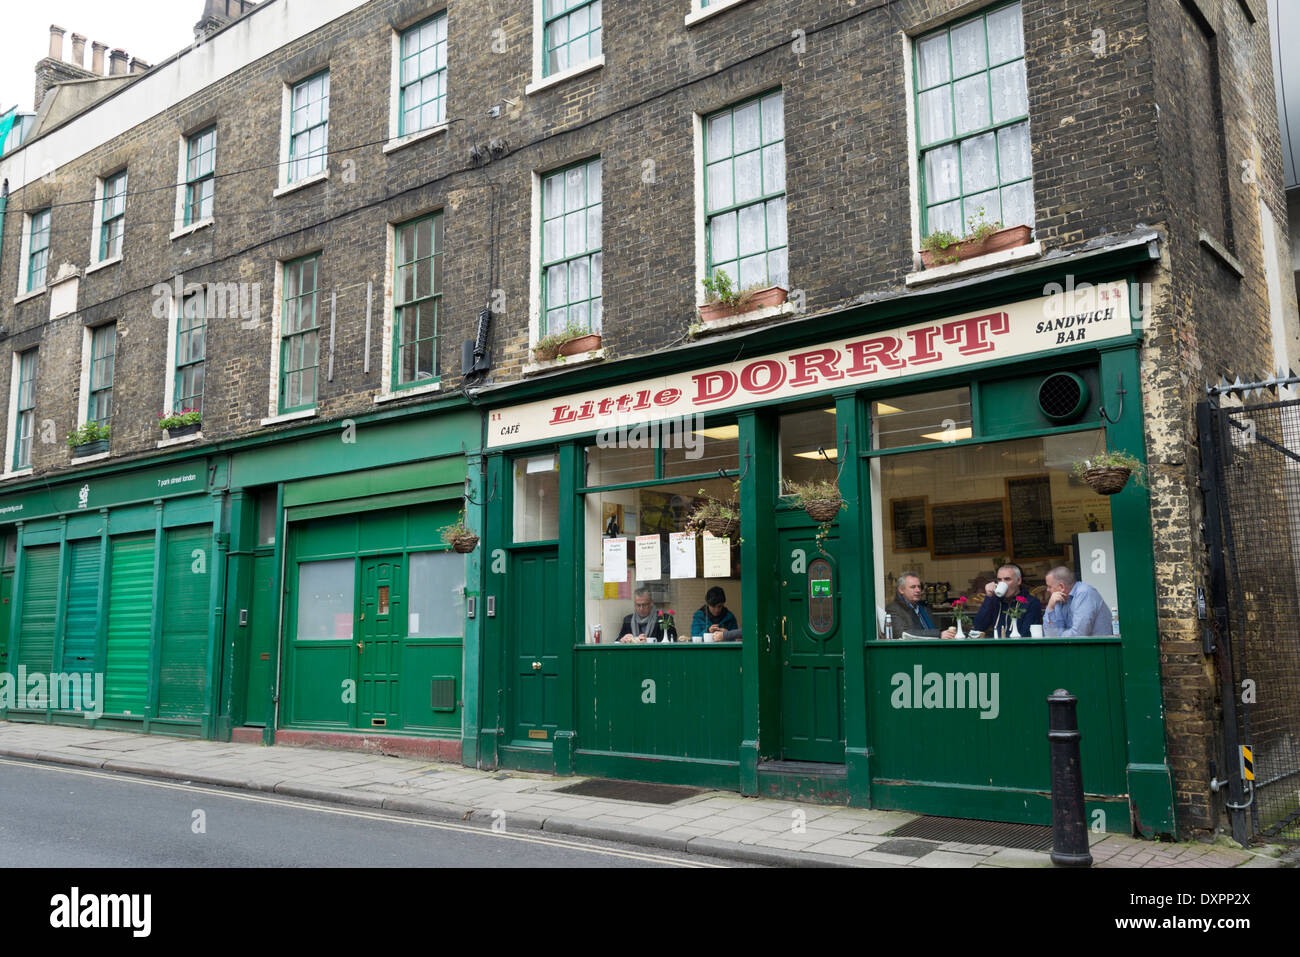 Little Dorrit cafe next to Borough Market, London, England, UK Stock Photo